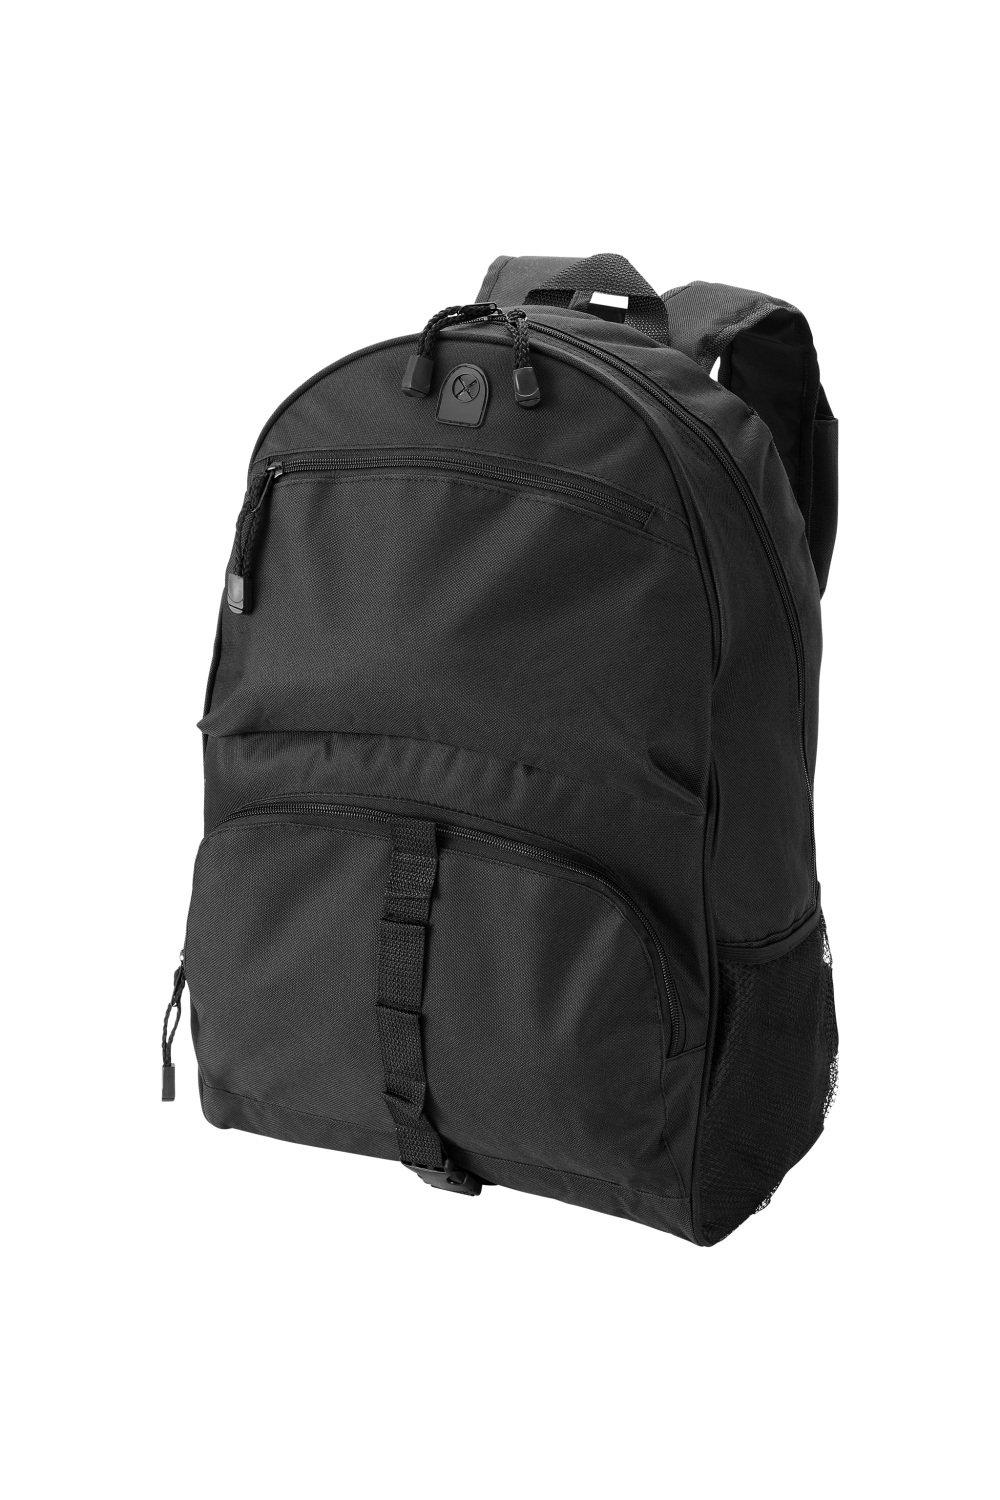 Юта Рюкзак Bullet, черный водонепроницаемый и износостойкий рюкзак из ткани оксфорд с двумя боковыми сетчатыми карманами